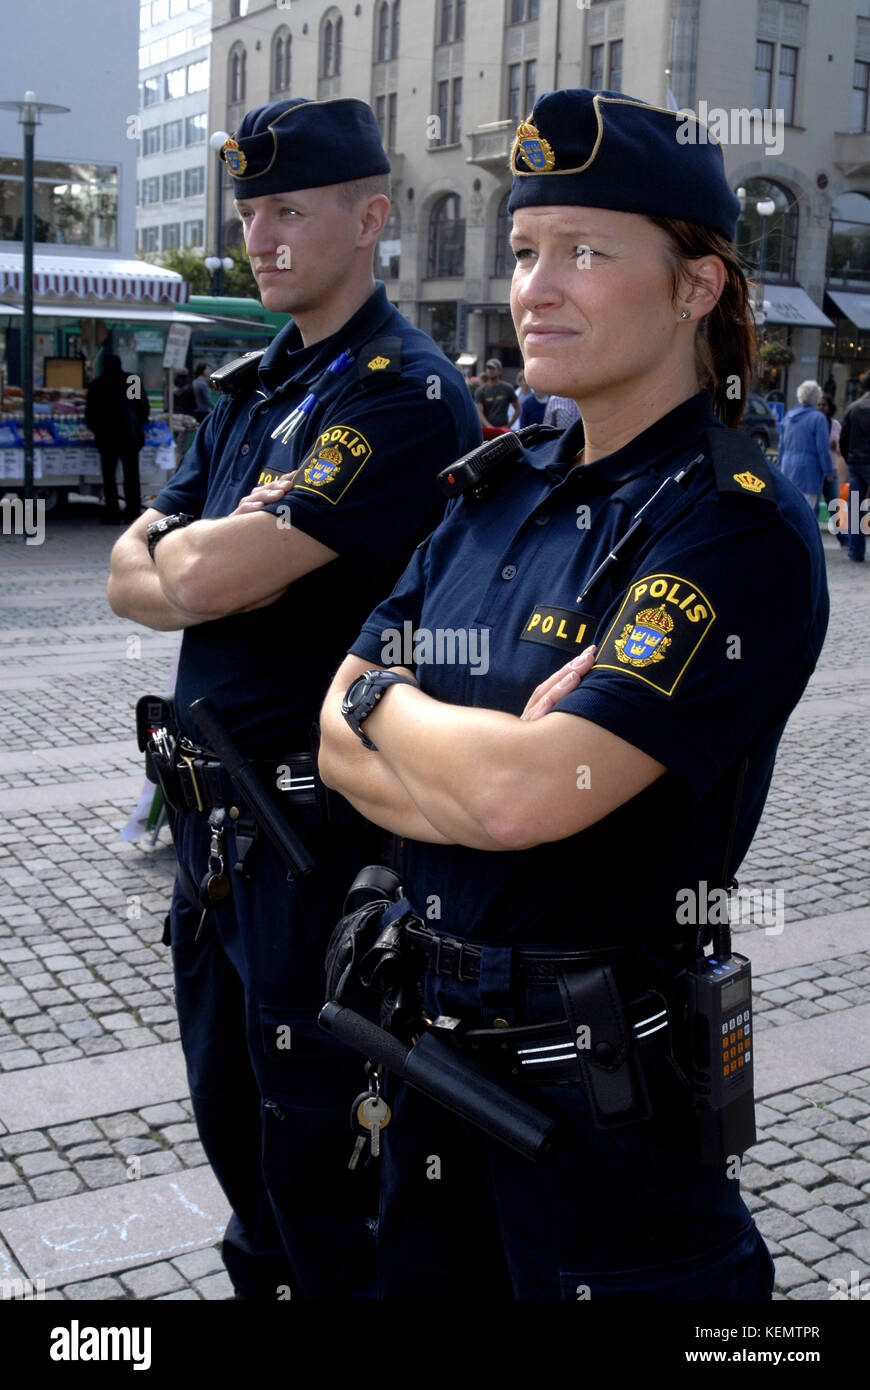 Polisuniform Sverige